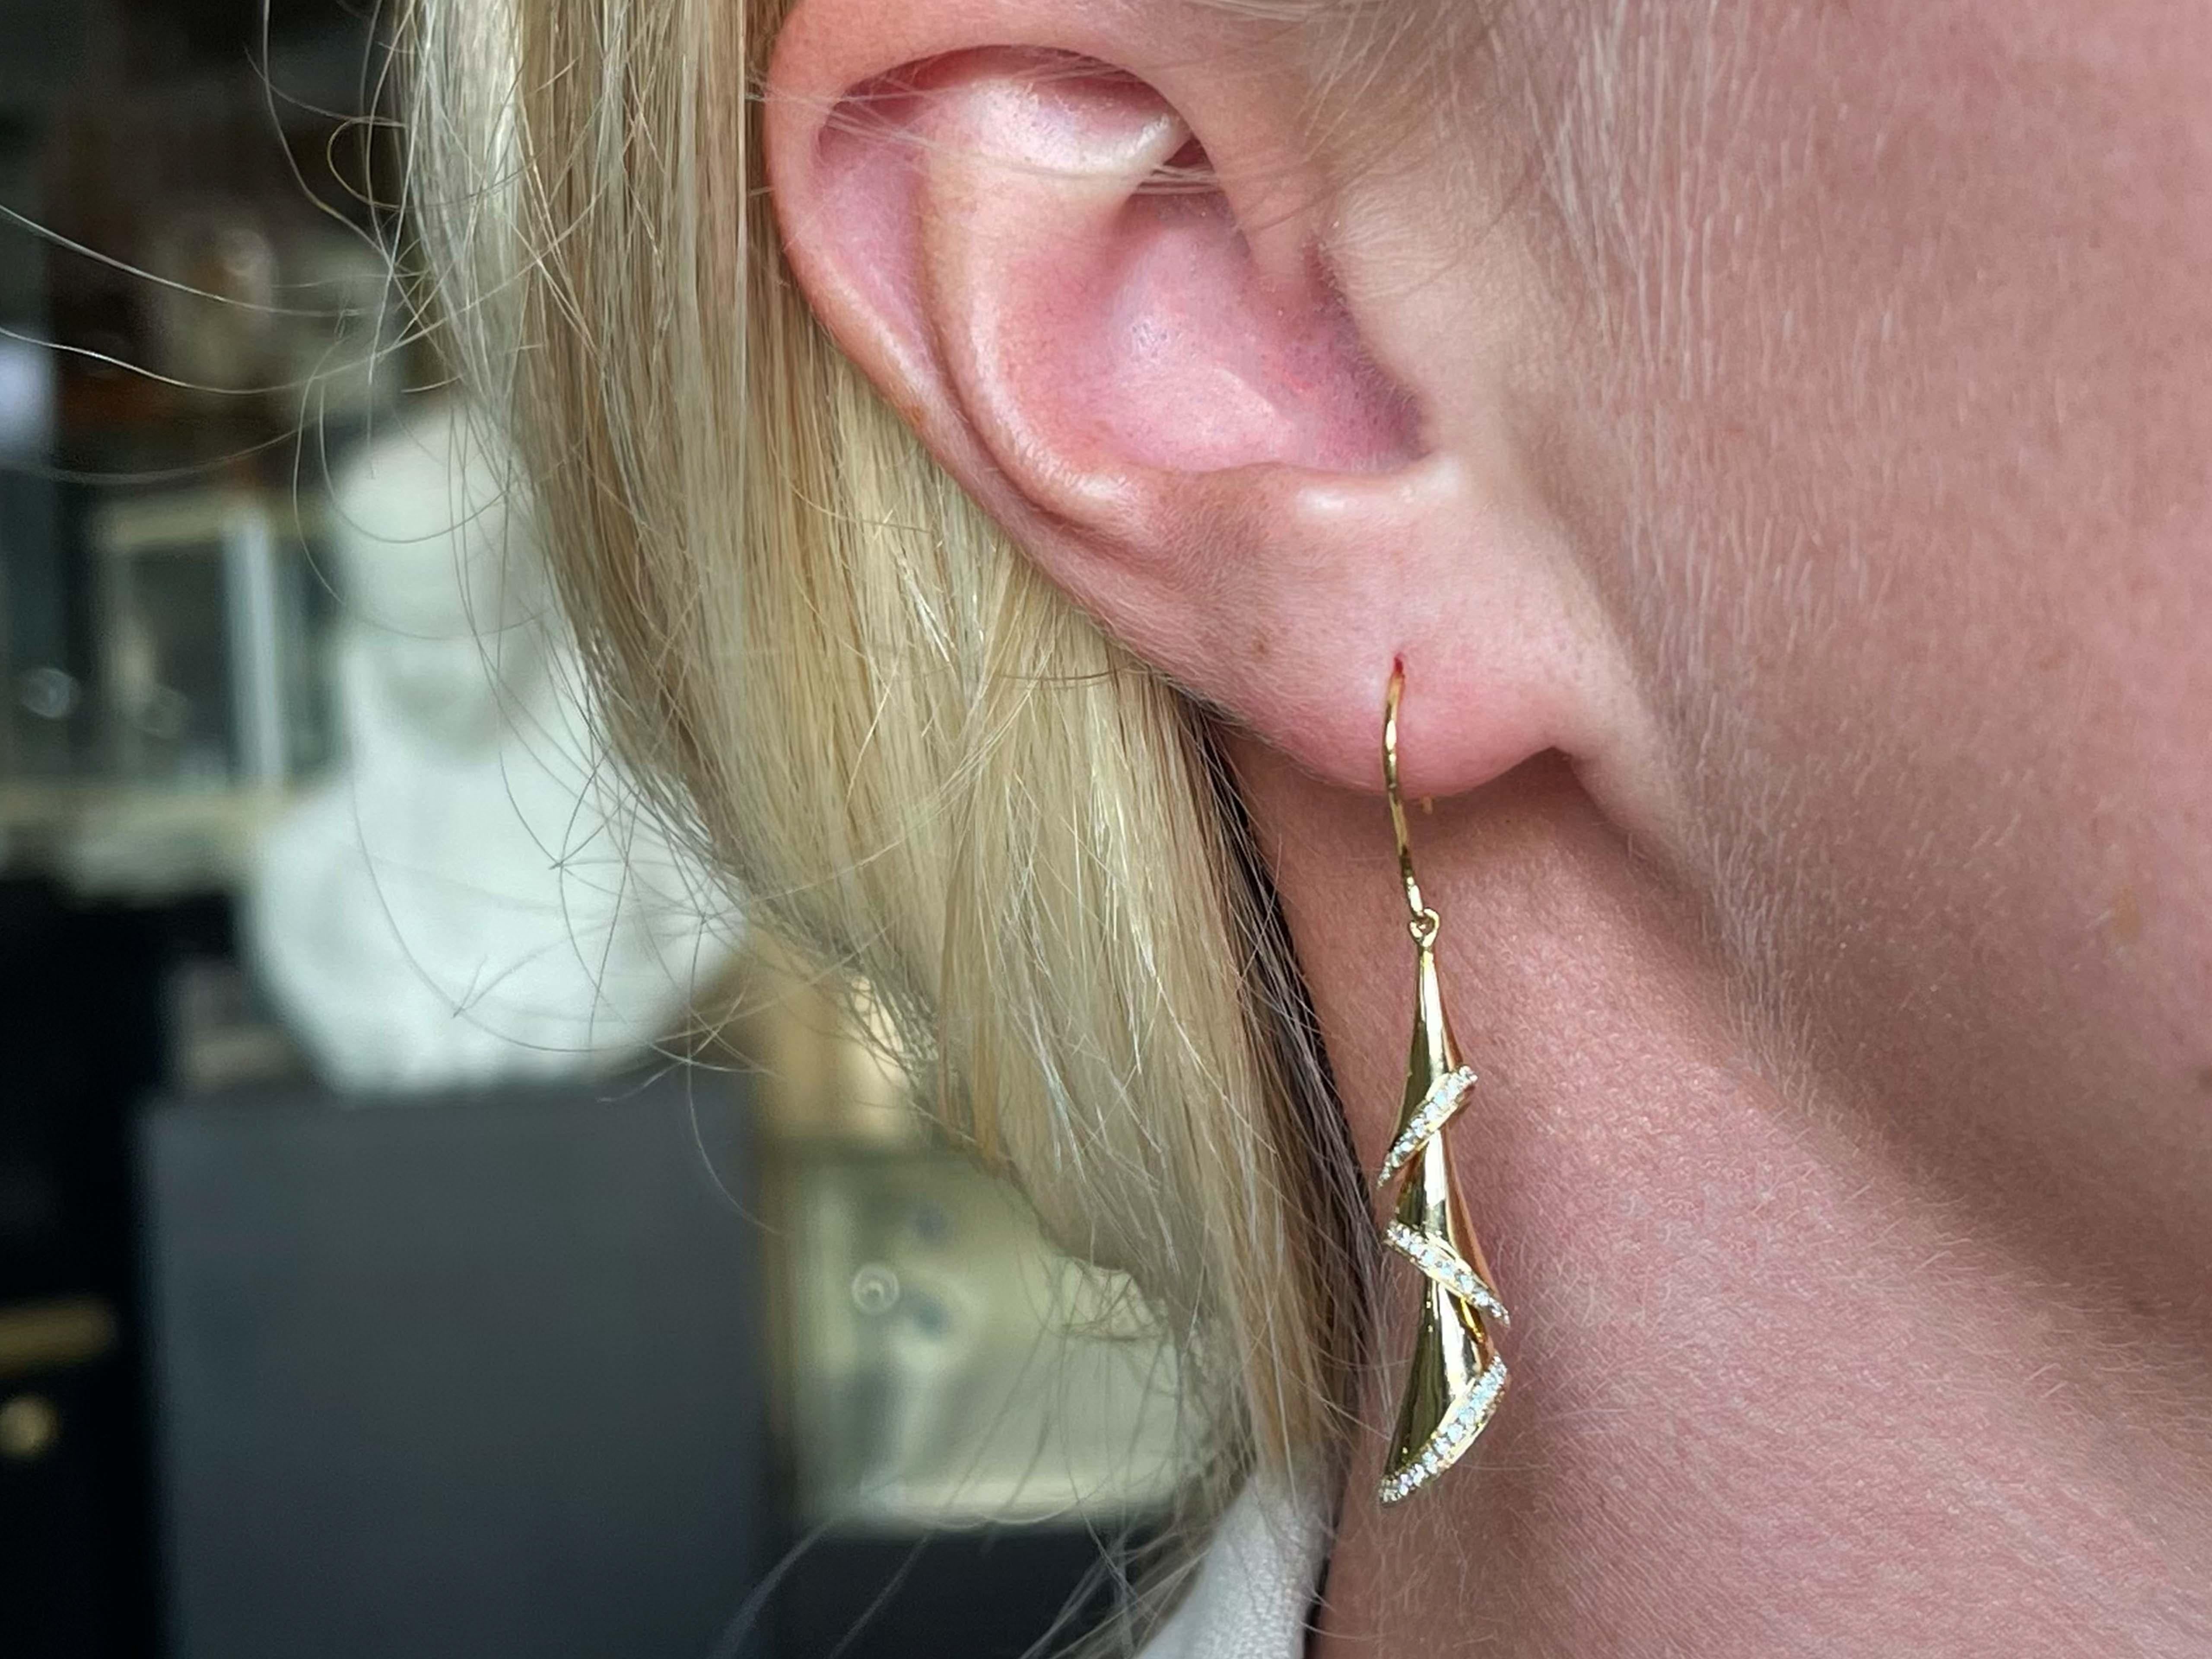 Earrings Specifications:

Metal: 18K Yellow Gold

Earring Length: 1.75